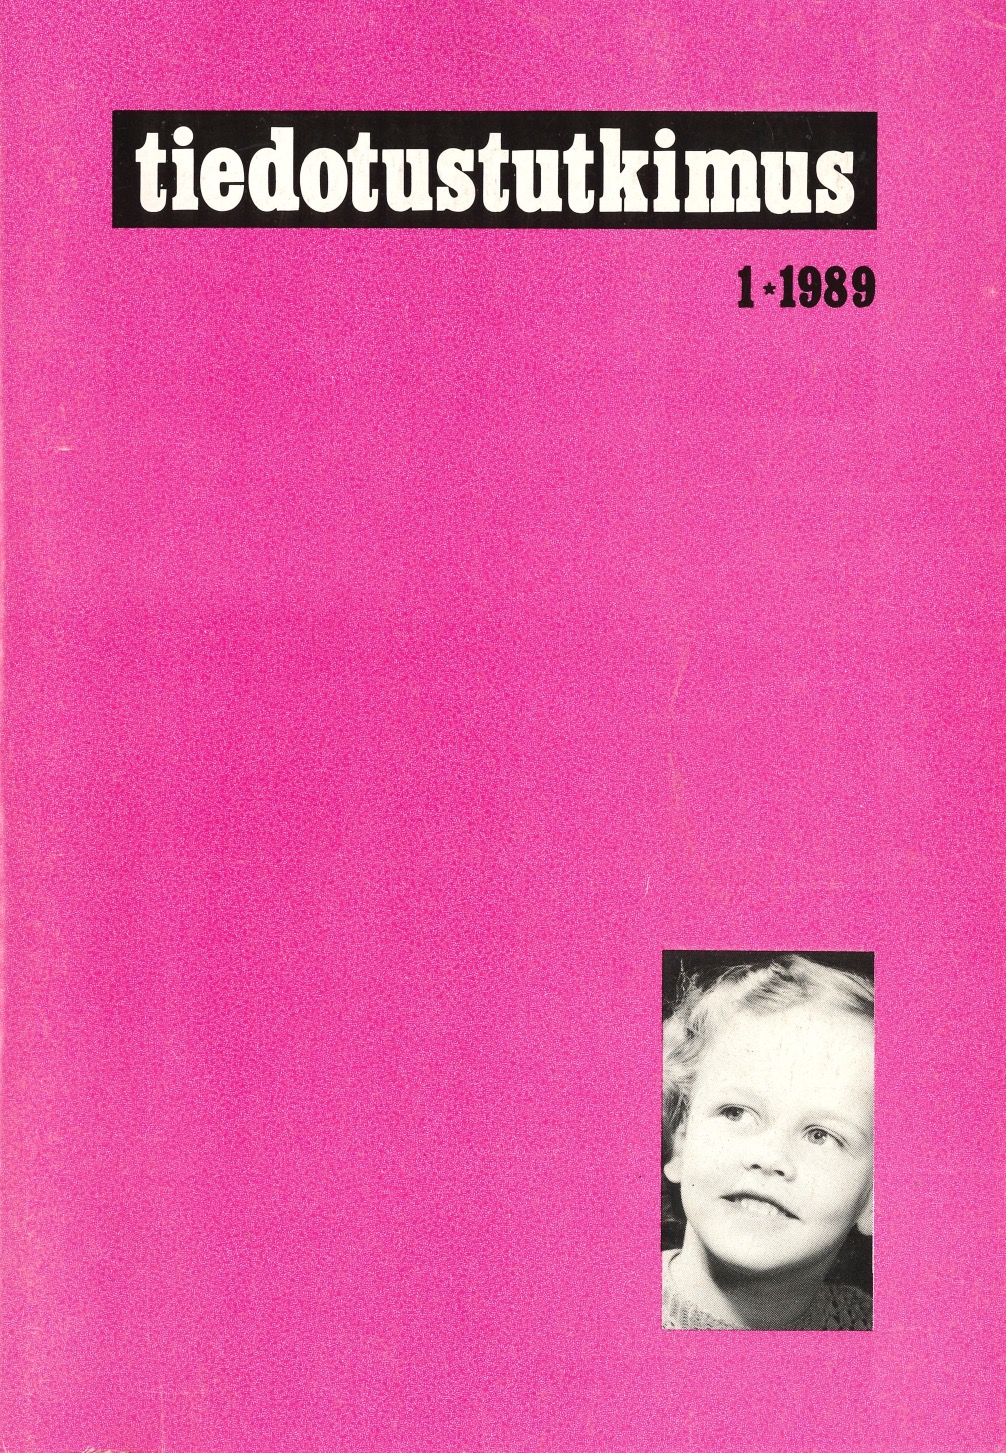 					Näytä Vol 12 Nro 1 (1989)
				